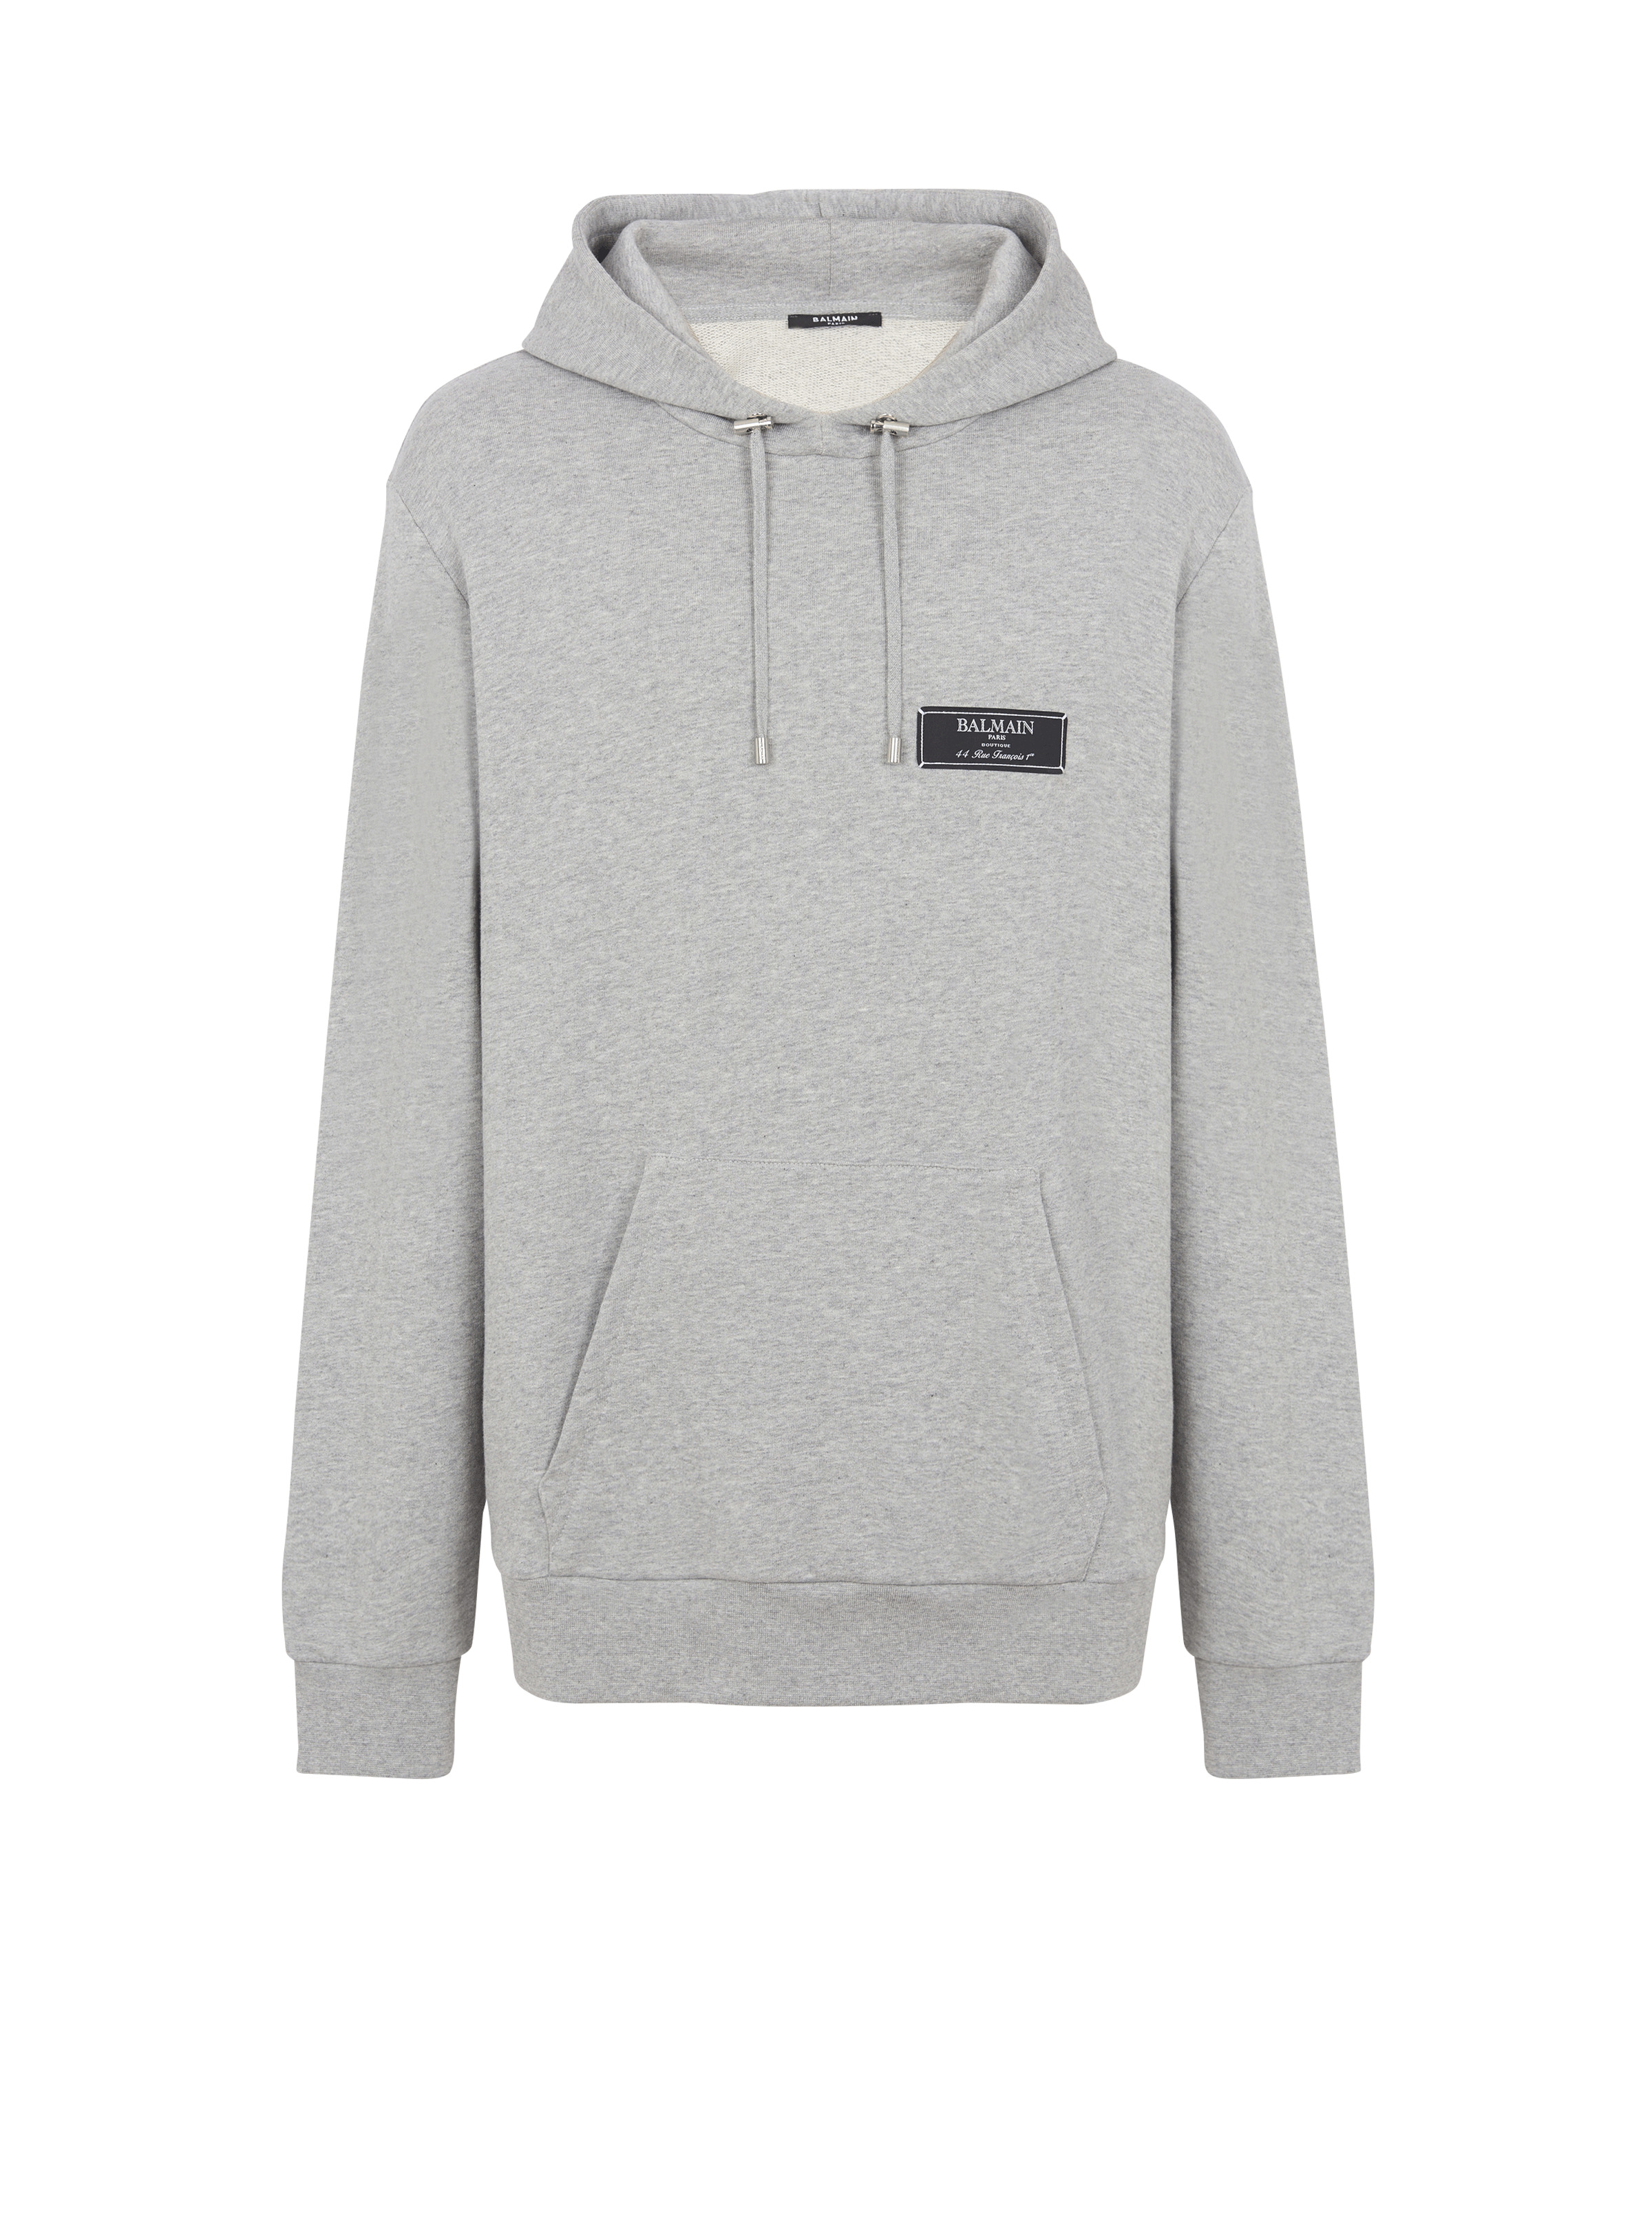 Balmain label hoodie - 1